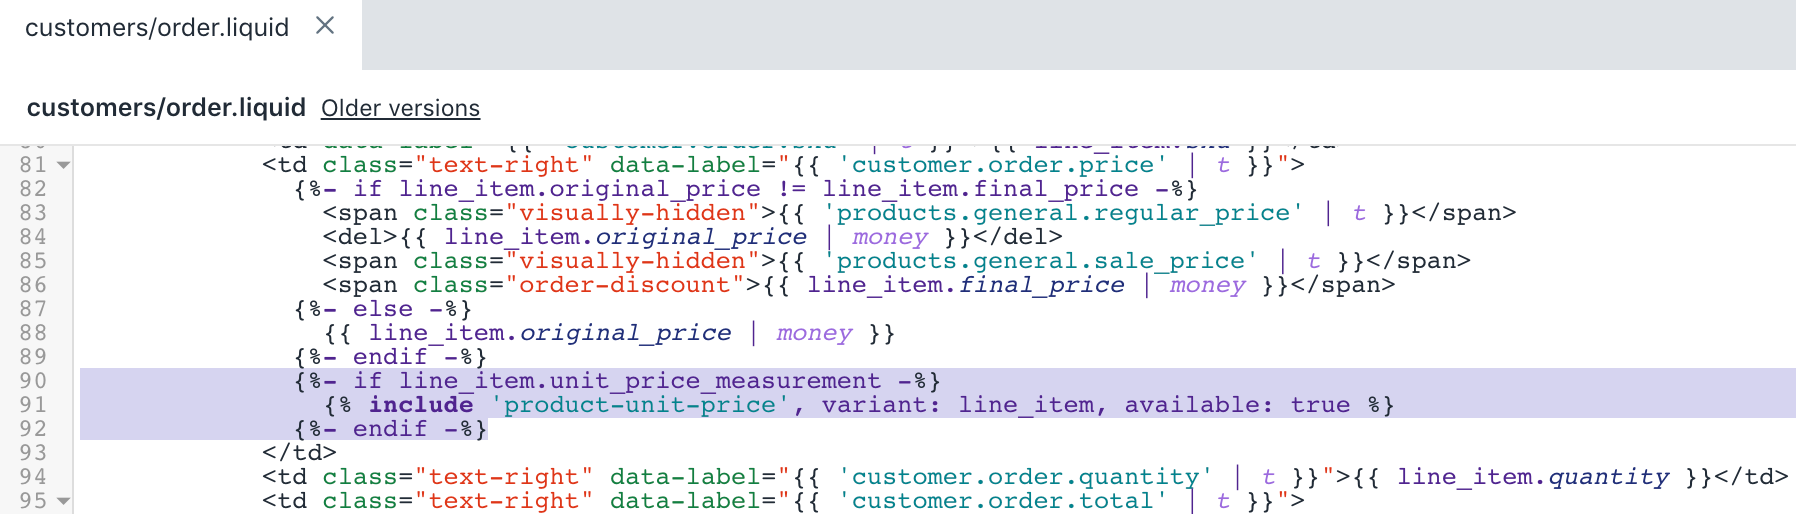 De bijgewerkte versie van het bestand customers/order.liquid”width=